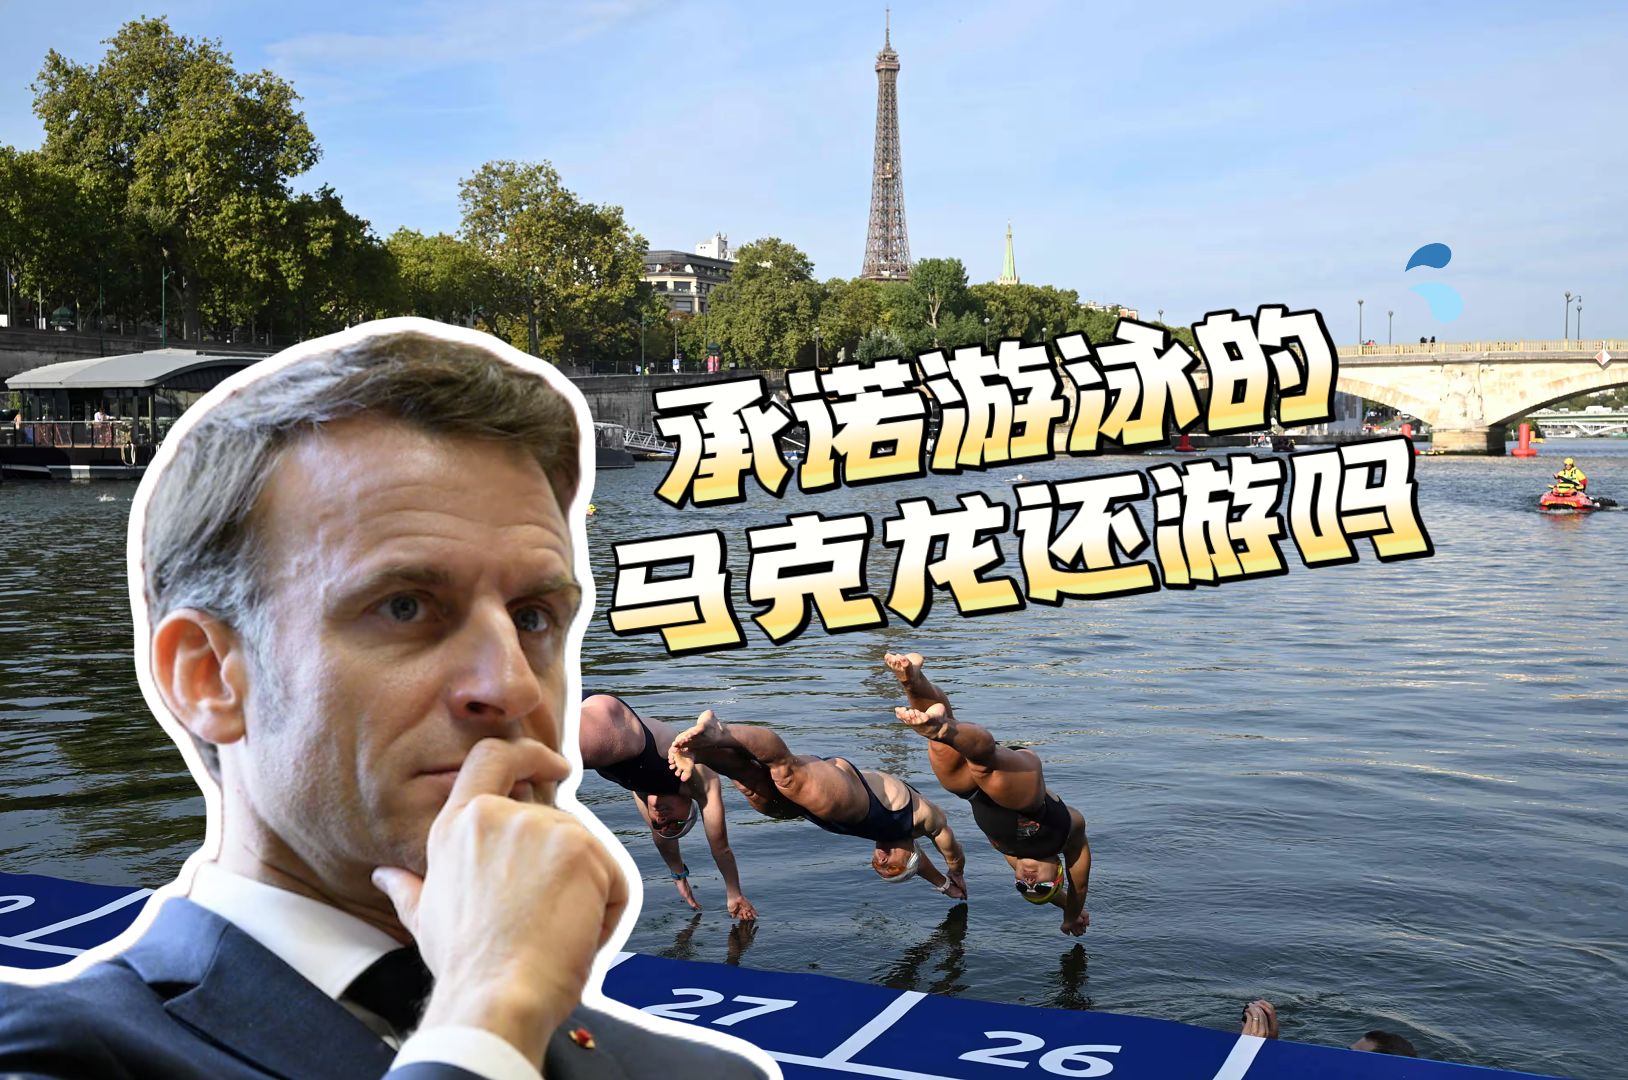 外媒称塞纳河大肠杆菌仍严重超标 巴黎奥运铁人三项游泳可能推迟甚至取消